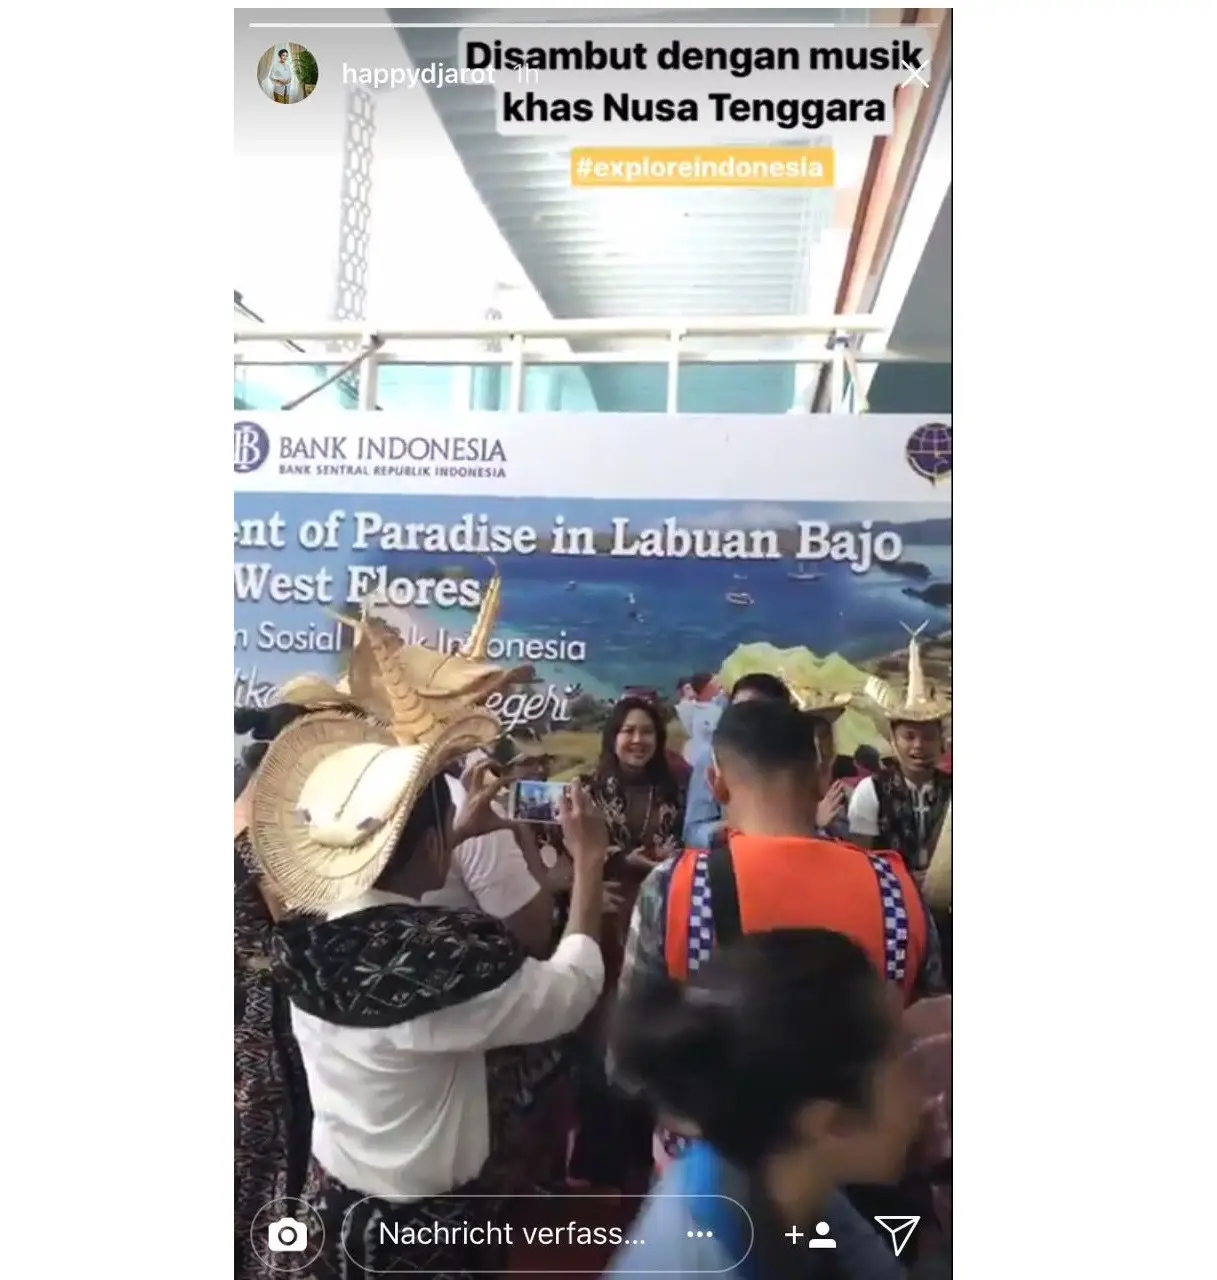 Happy Farida Djarot mengunjungi Labuan Bajo, Nusa Tenggara Timur, saat Anies-Sandi dilantik menjadi Gubernur dan Wakil Gubernur DKI Jakarta. (Instagram/happydjarot)